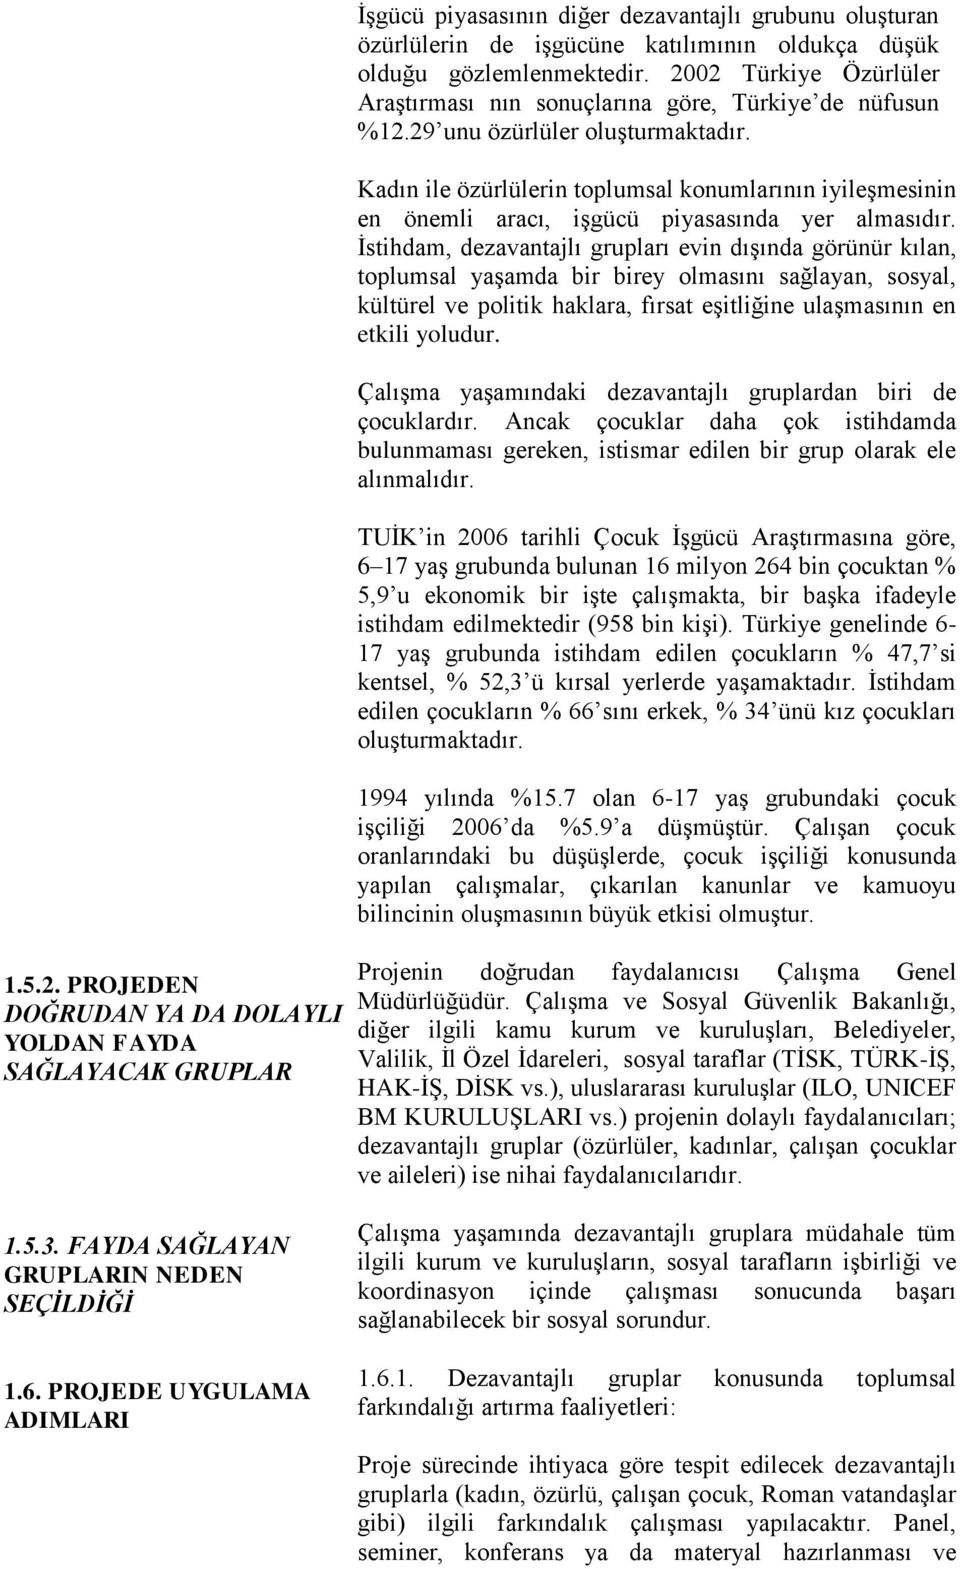 2002 Türkiye Özürlüler Araştırması nın sonuçlarına göre, Türkiye de nüfusun %12.29 unu özürlüler oluşturmaktadır.